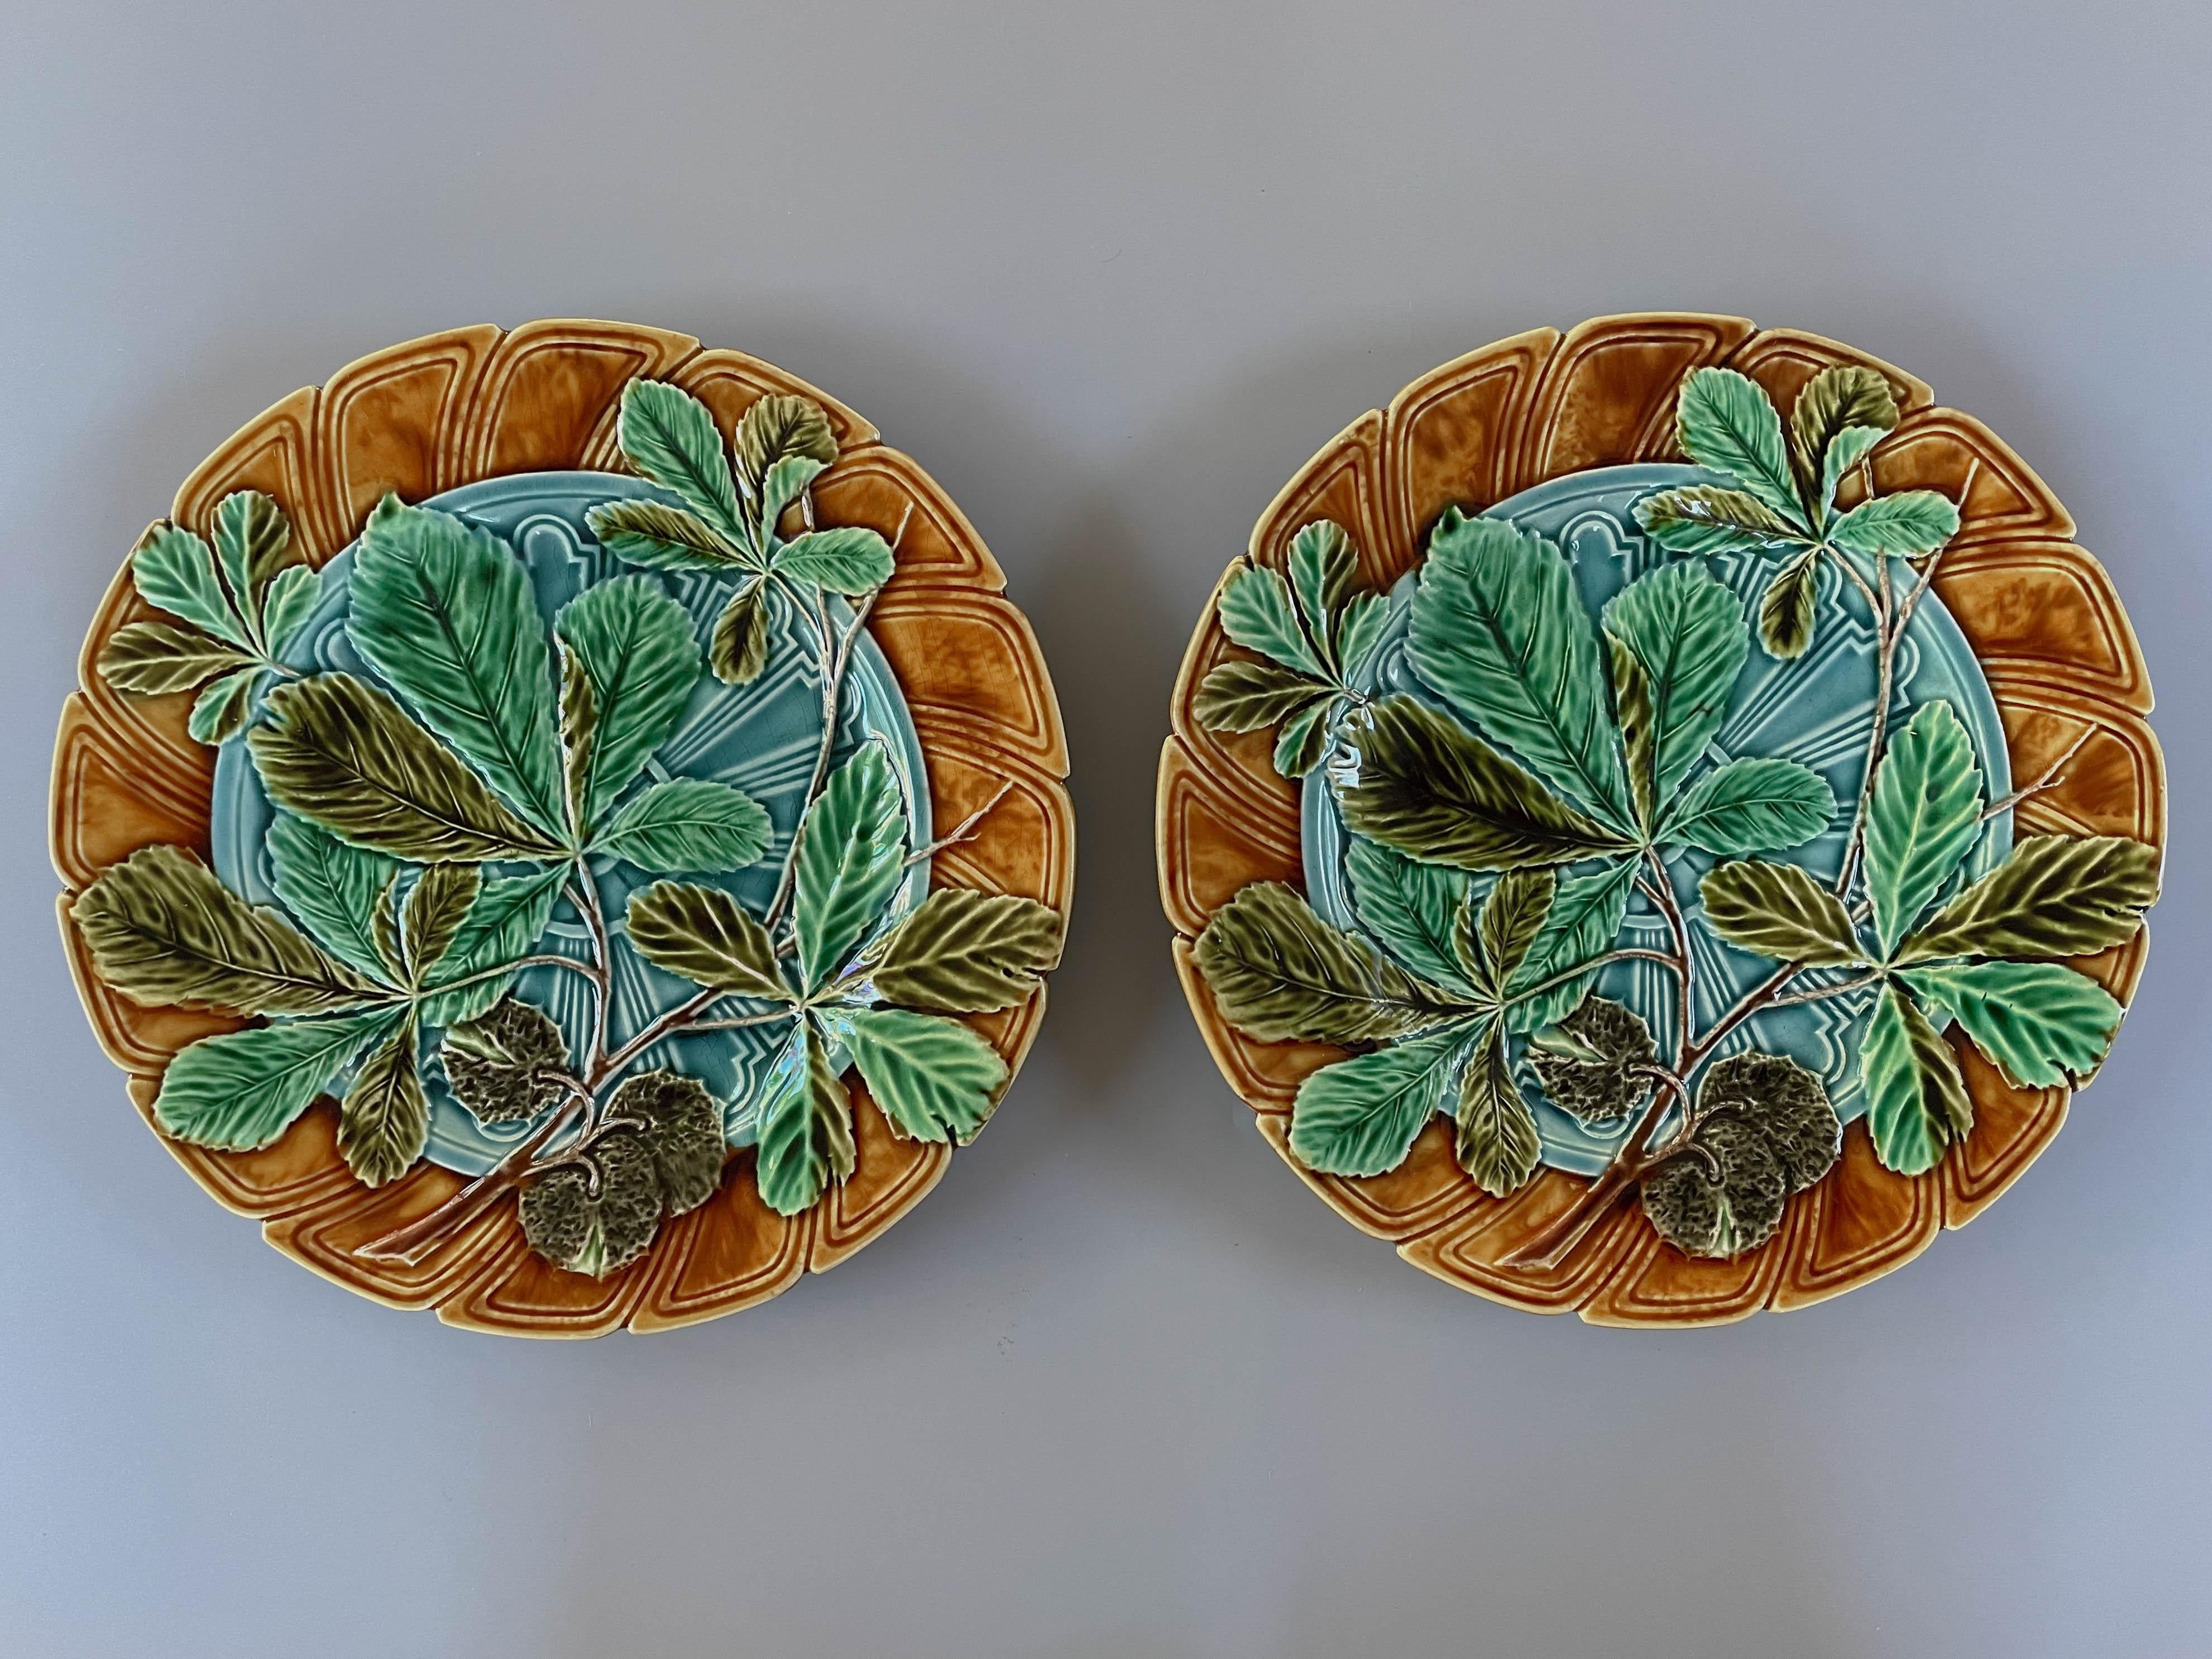 Ein Paar französischer Sarreguemines Majolika-Teller aus dem 19. Jahrhundert, glasiert, mit Kastanienblattmuster in Grüntönen, auf türkisblauem Grund und ockerfarbenem Rand. Blaue Glasur auf der Rückseite. Verso bezeichnet: Majolika Sarreguemines.